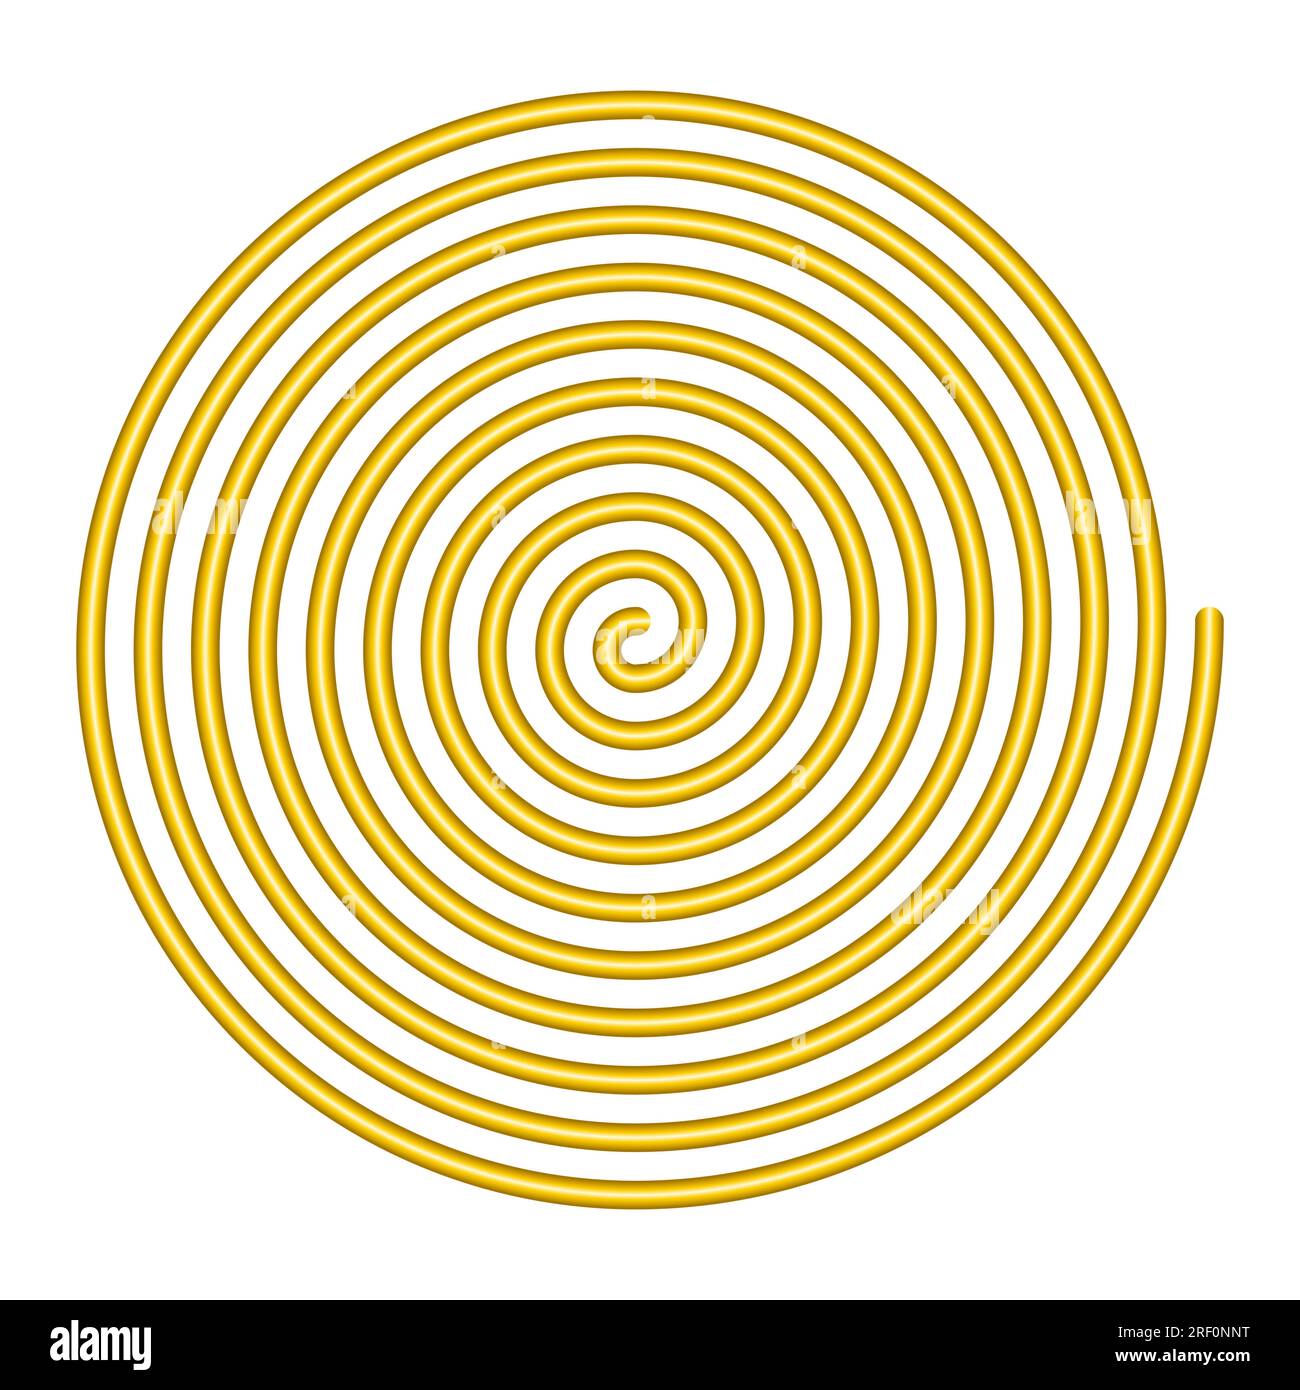 Spirale lineare grande. Spirale archimedea color oro di con dieci torte di un braccio di una spirale aritmetica, che ruota con velocità angolare costante. Foto Stock